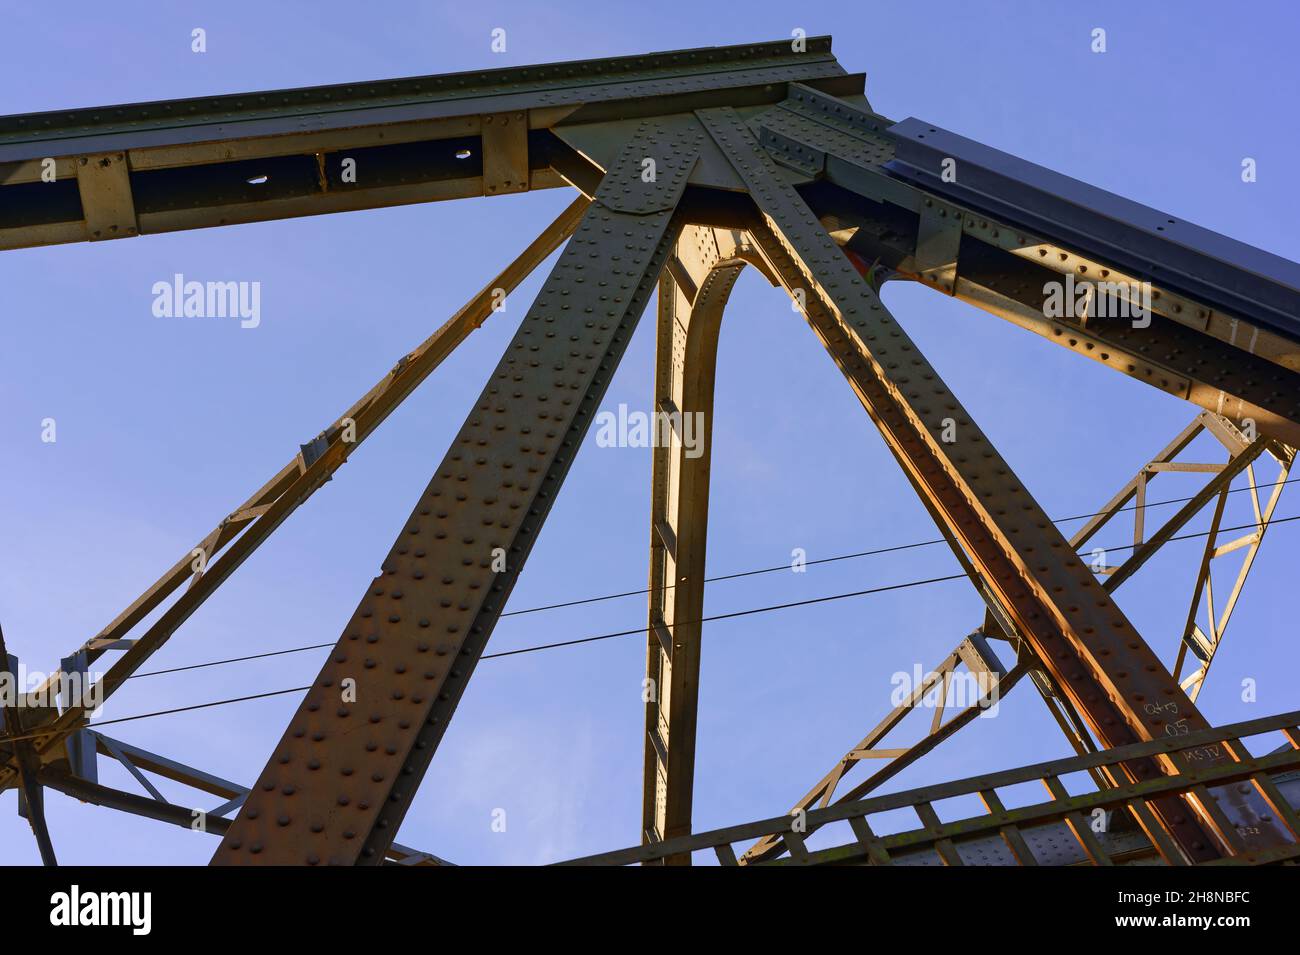 Eisenbahnbrücke vor blauem Himmel, Konstruktionsdetails mit Nieten, wenig Wolken Stock Photo